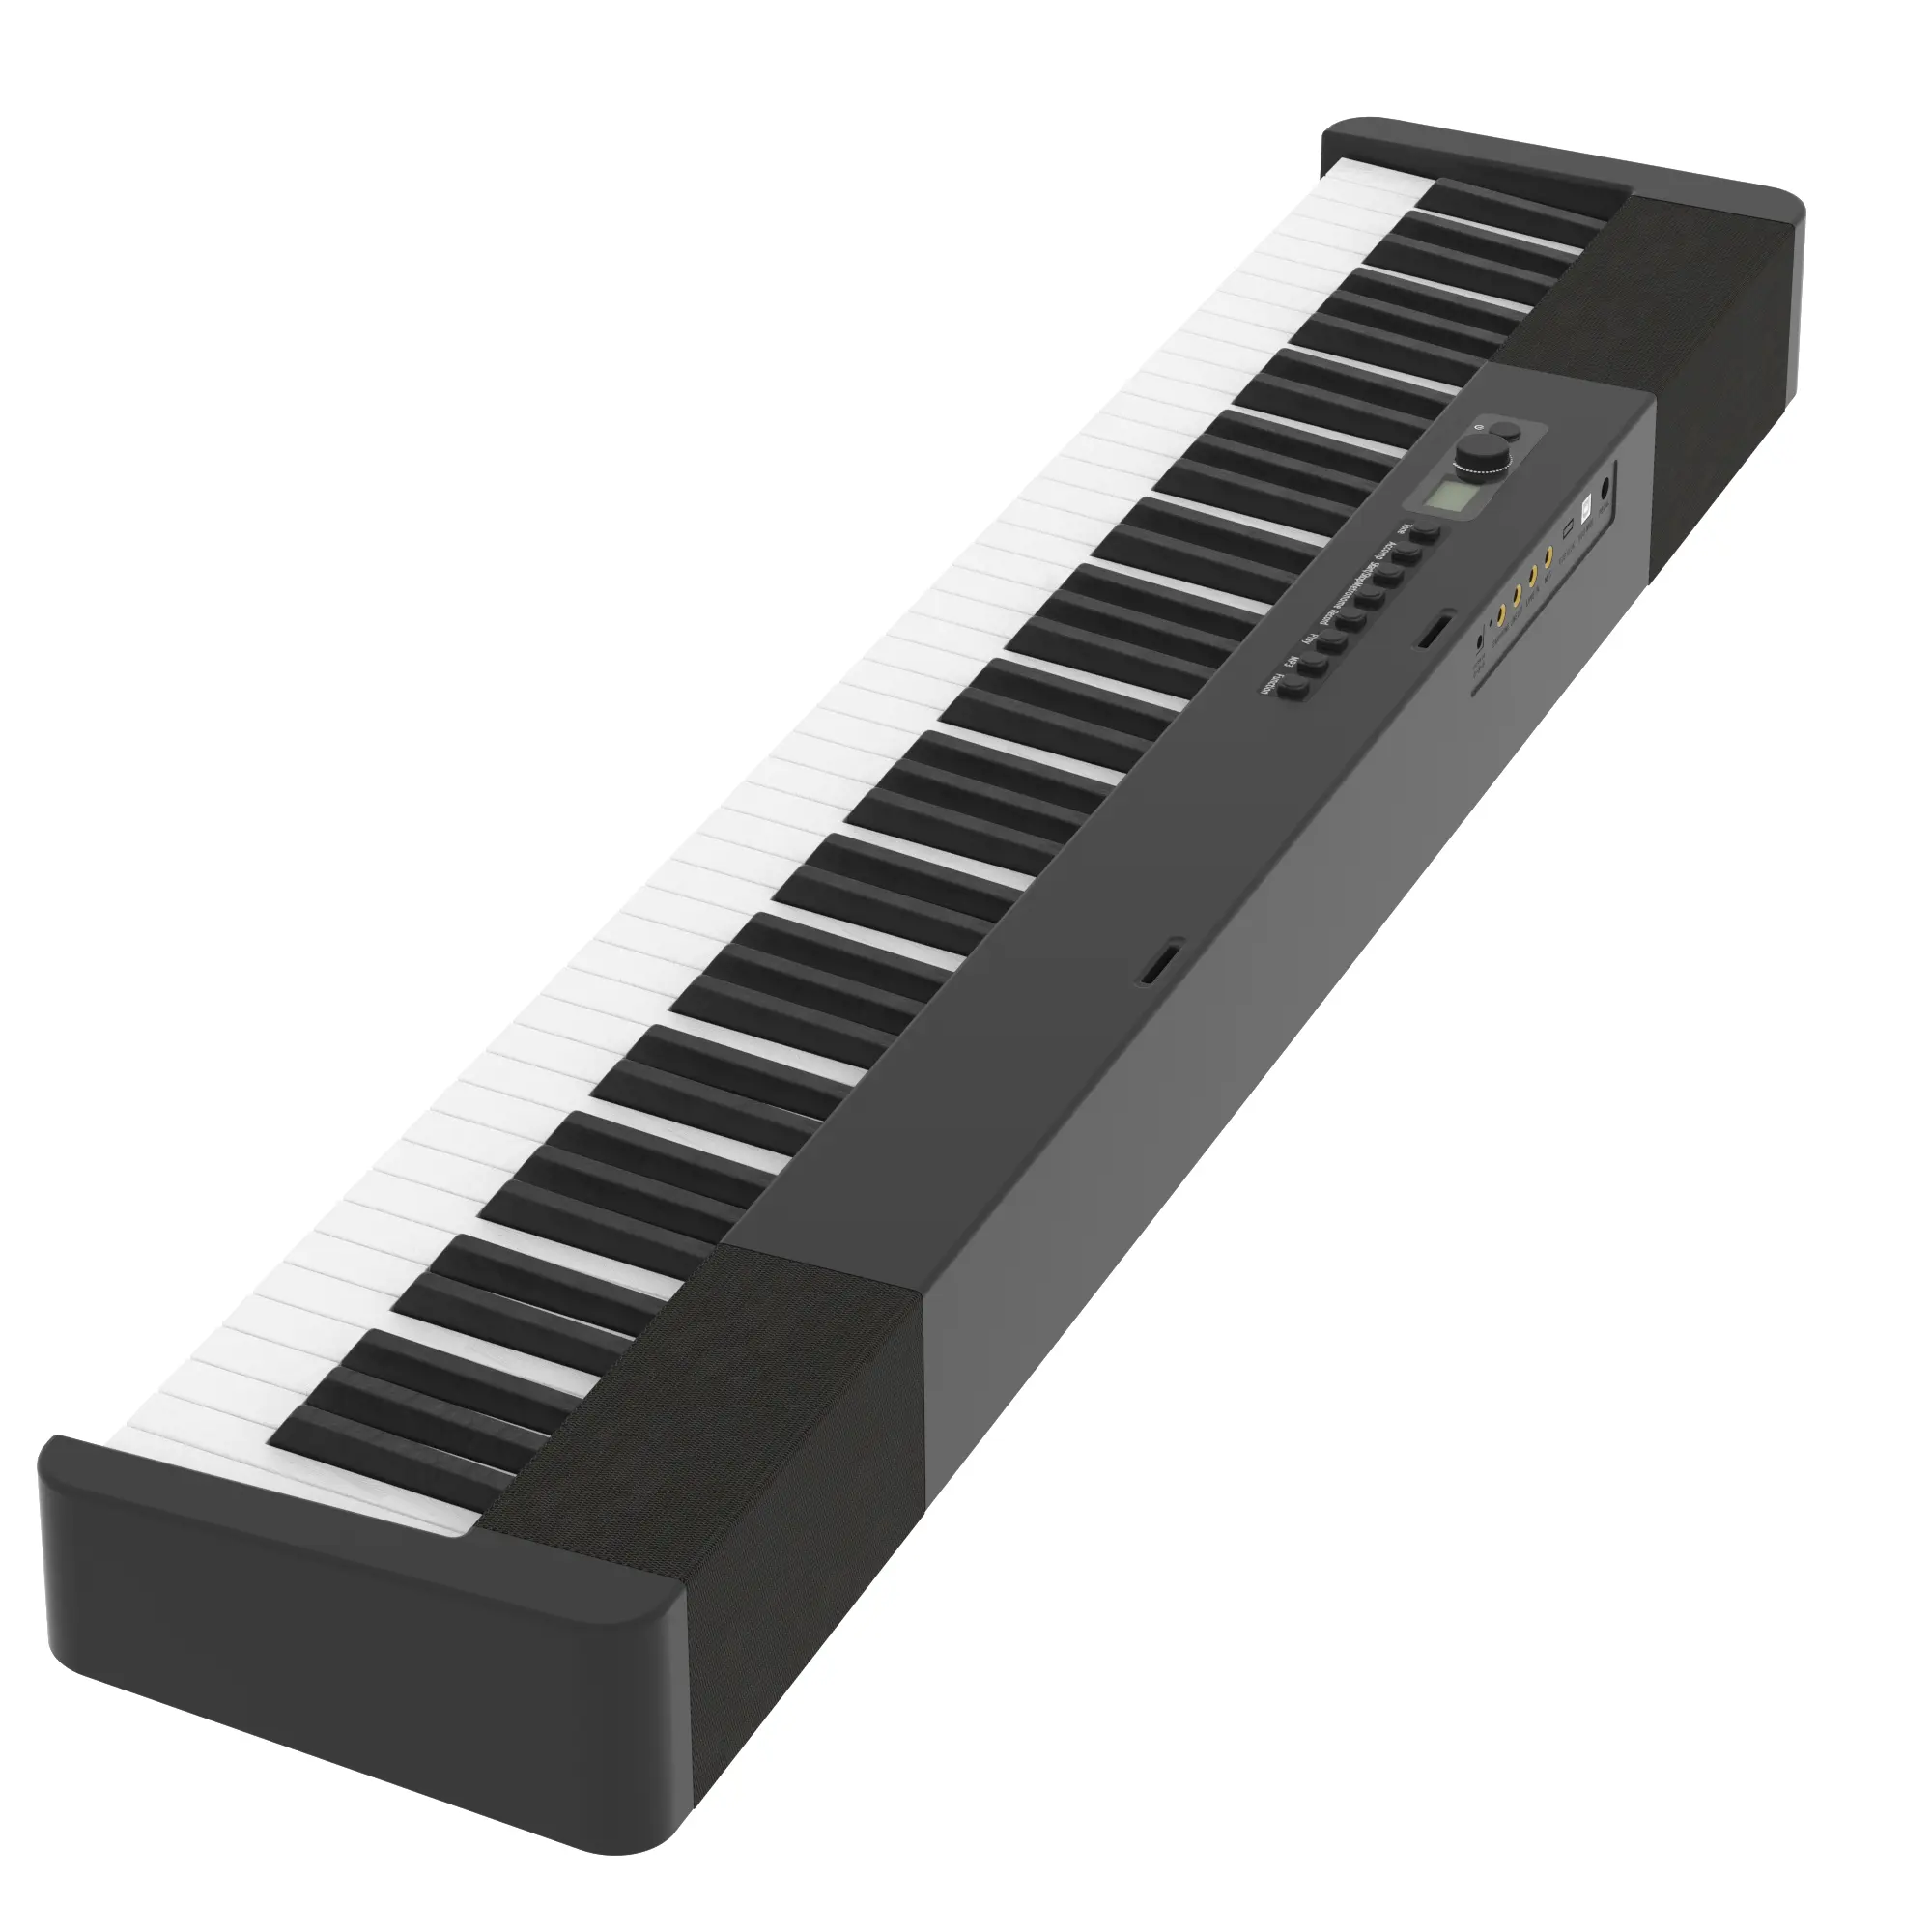 Chinese Groothandel Digitale Piano Elektronisch Orgel Hoge Professionele Instrumenten Hamer Actie Piano Met Hoge Kwaliteit Speakers